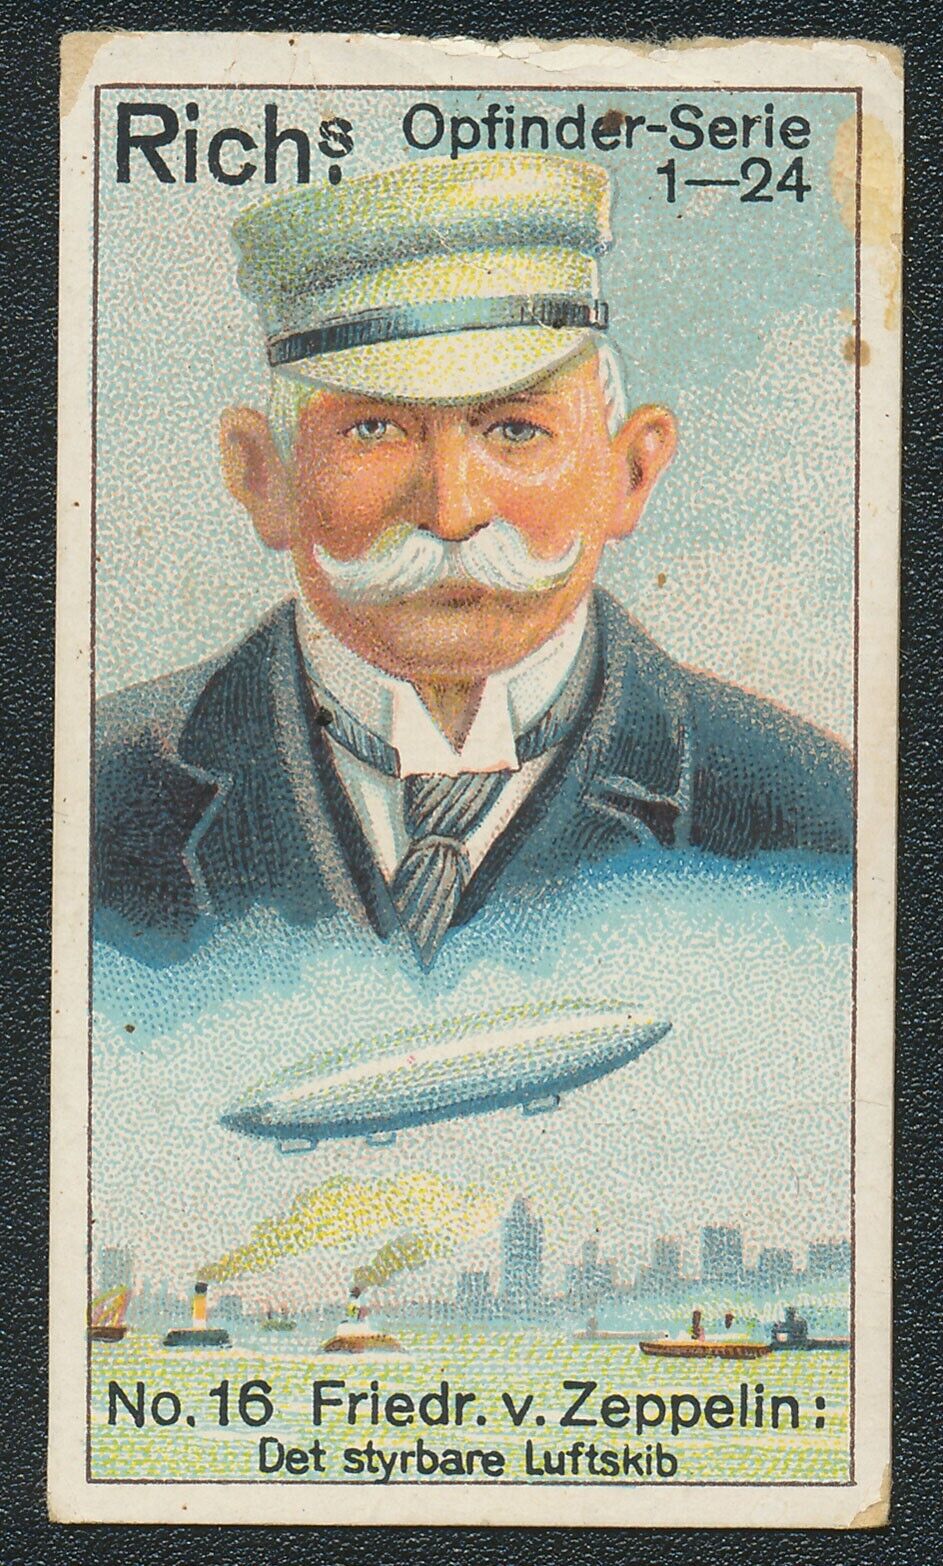 1927 RICH\'S COFFEE FERDINAND von ZEPPELIN INVENTOR DUTCH OPFINDER CARD #16